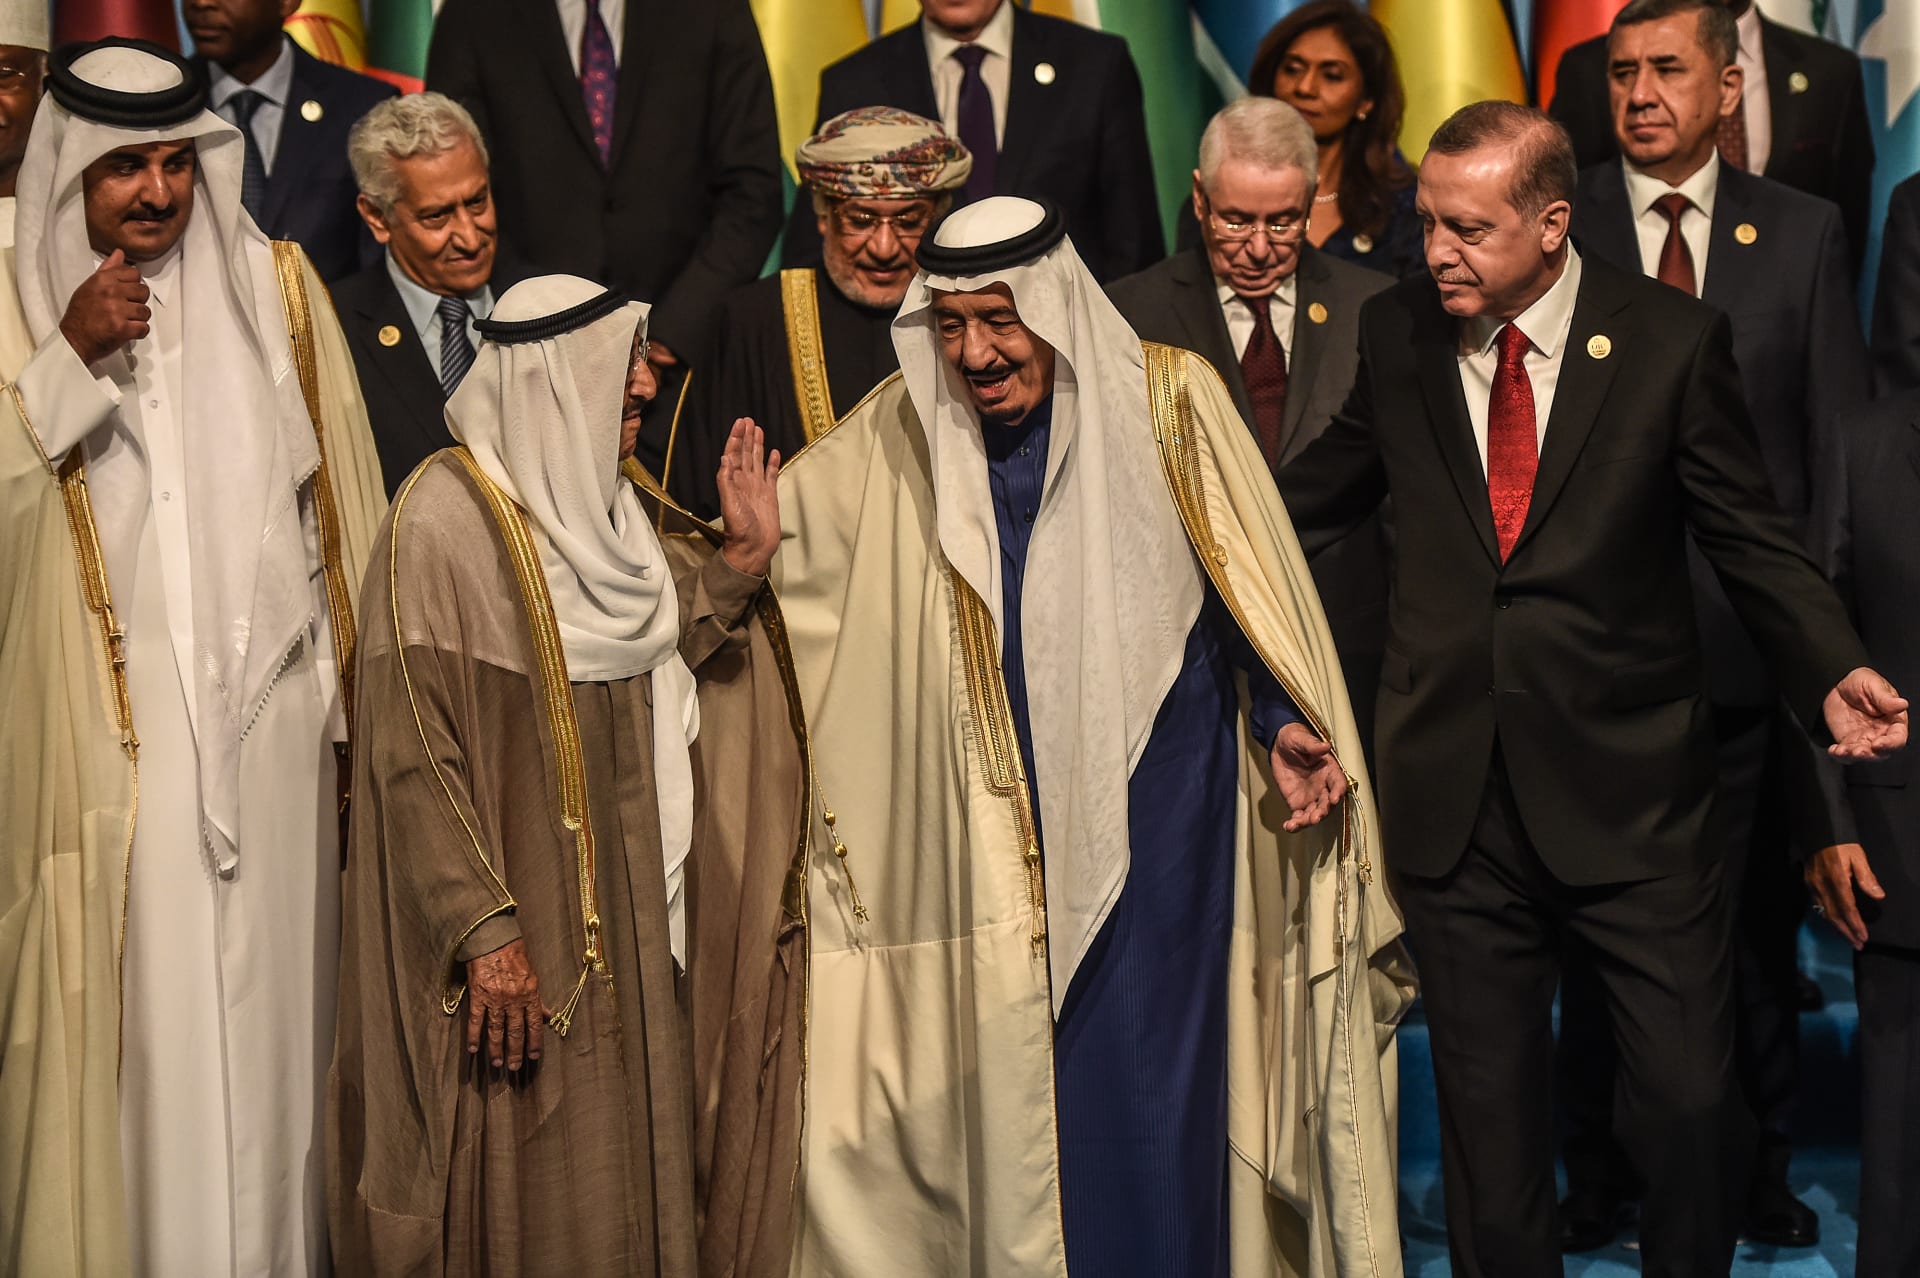 سفير السعودية في أنقرة: القاعدة التركية في قطر تعقد الوضع.. وكنا نأمل من أنقرة اتخاذ موقف محايد